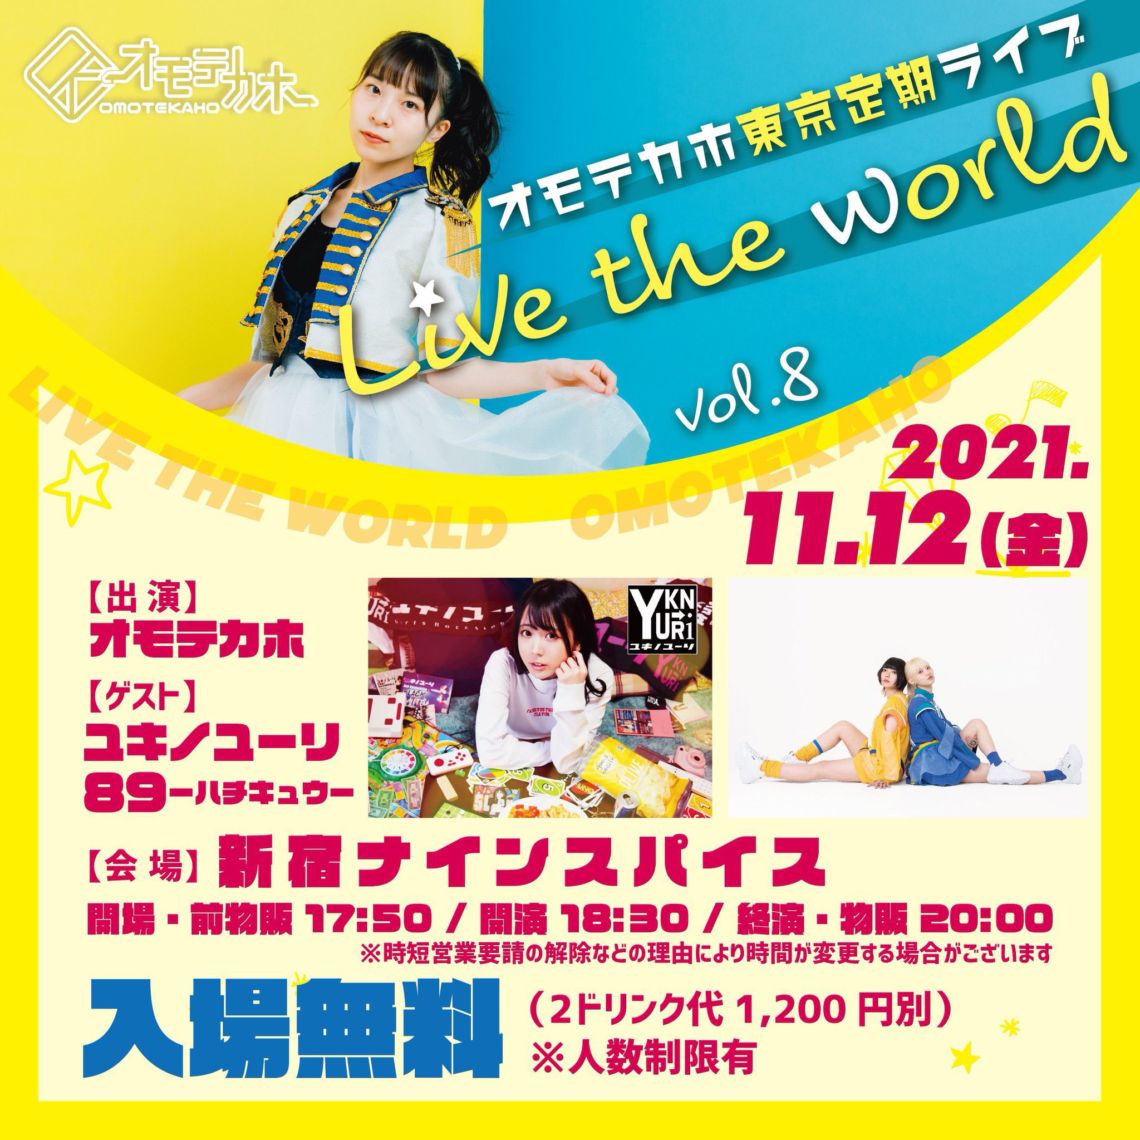 オモテカホ 東京定期ライブ 『 Live the world vol.8 』